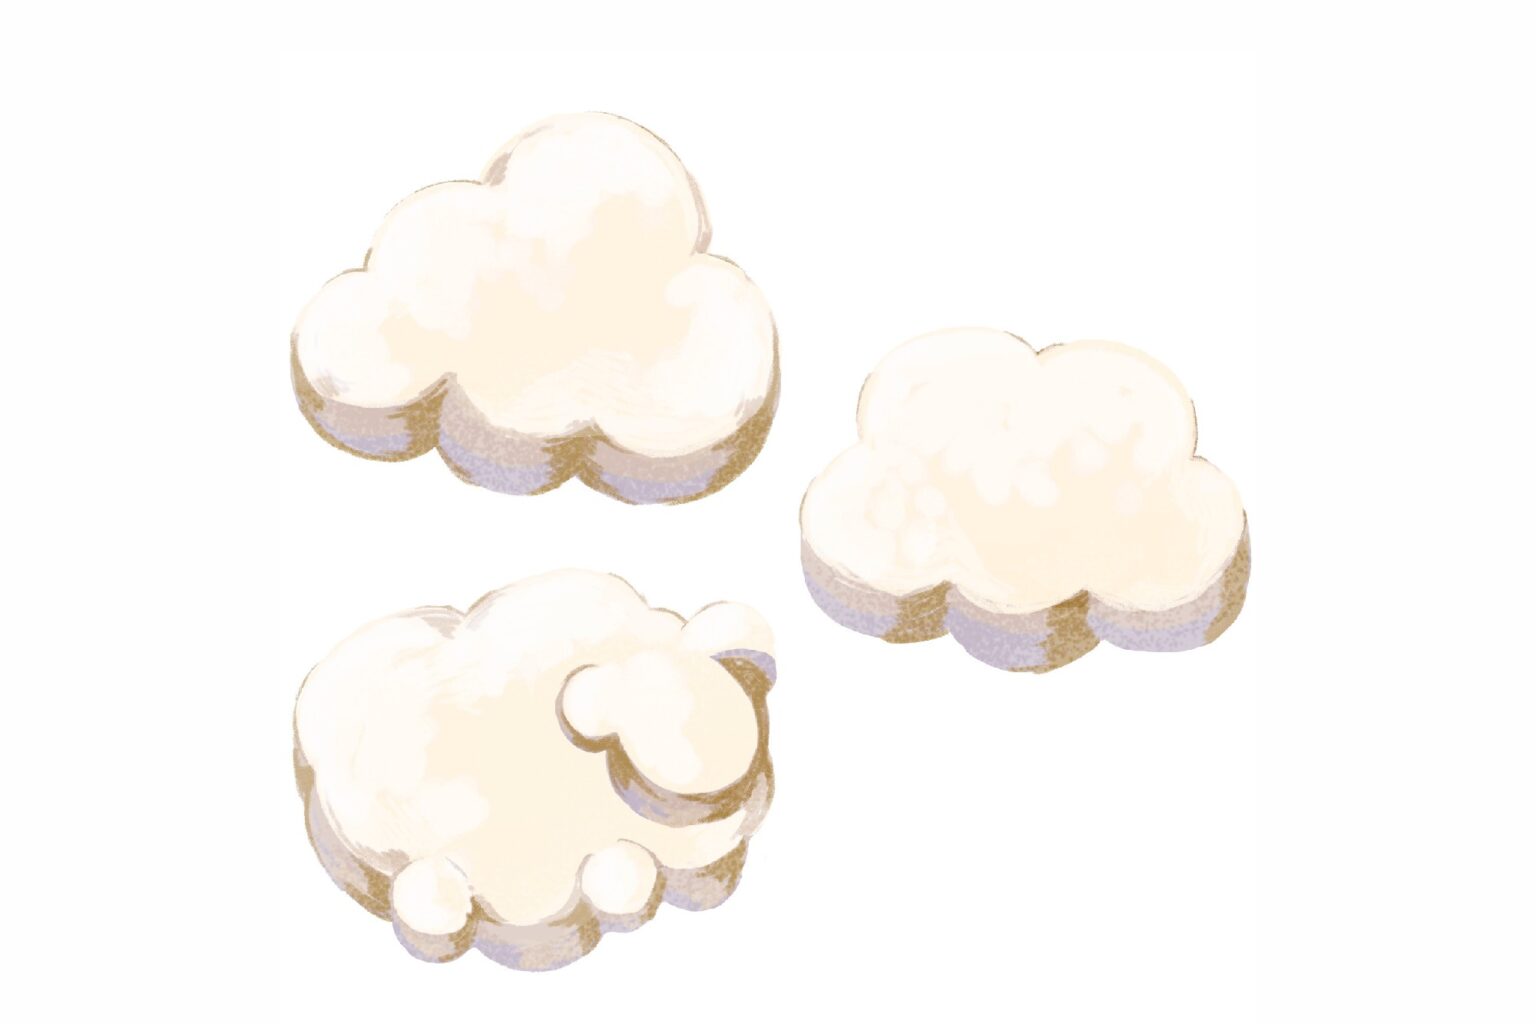 「雲グミ」＠aip.p.pさんが最初に発信したのが、こちらのグミ。雲の形をしたホワイトソーダの味わいで、マシュマロのような新食感のグミと話題になった。雲の形に交じって可愛らしいウサギ形のグミも入っていて、女性の心を掴んだのでは。